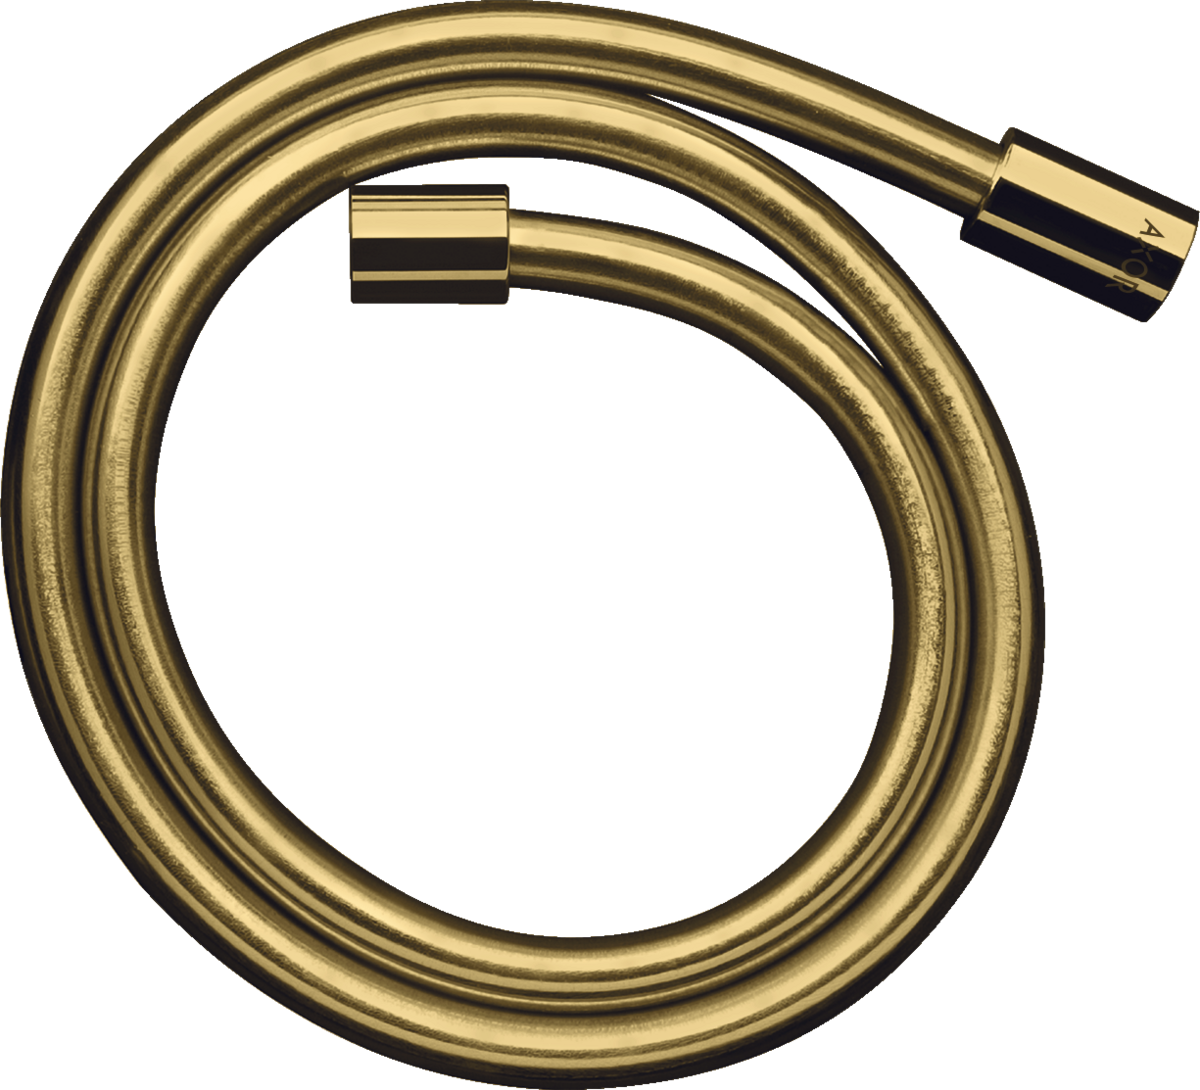 HANSGROHE AXOR Starck Metal görünümlü duş hortumu 1.25 m #28282990 - Parlak Altın Optik resmi